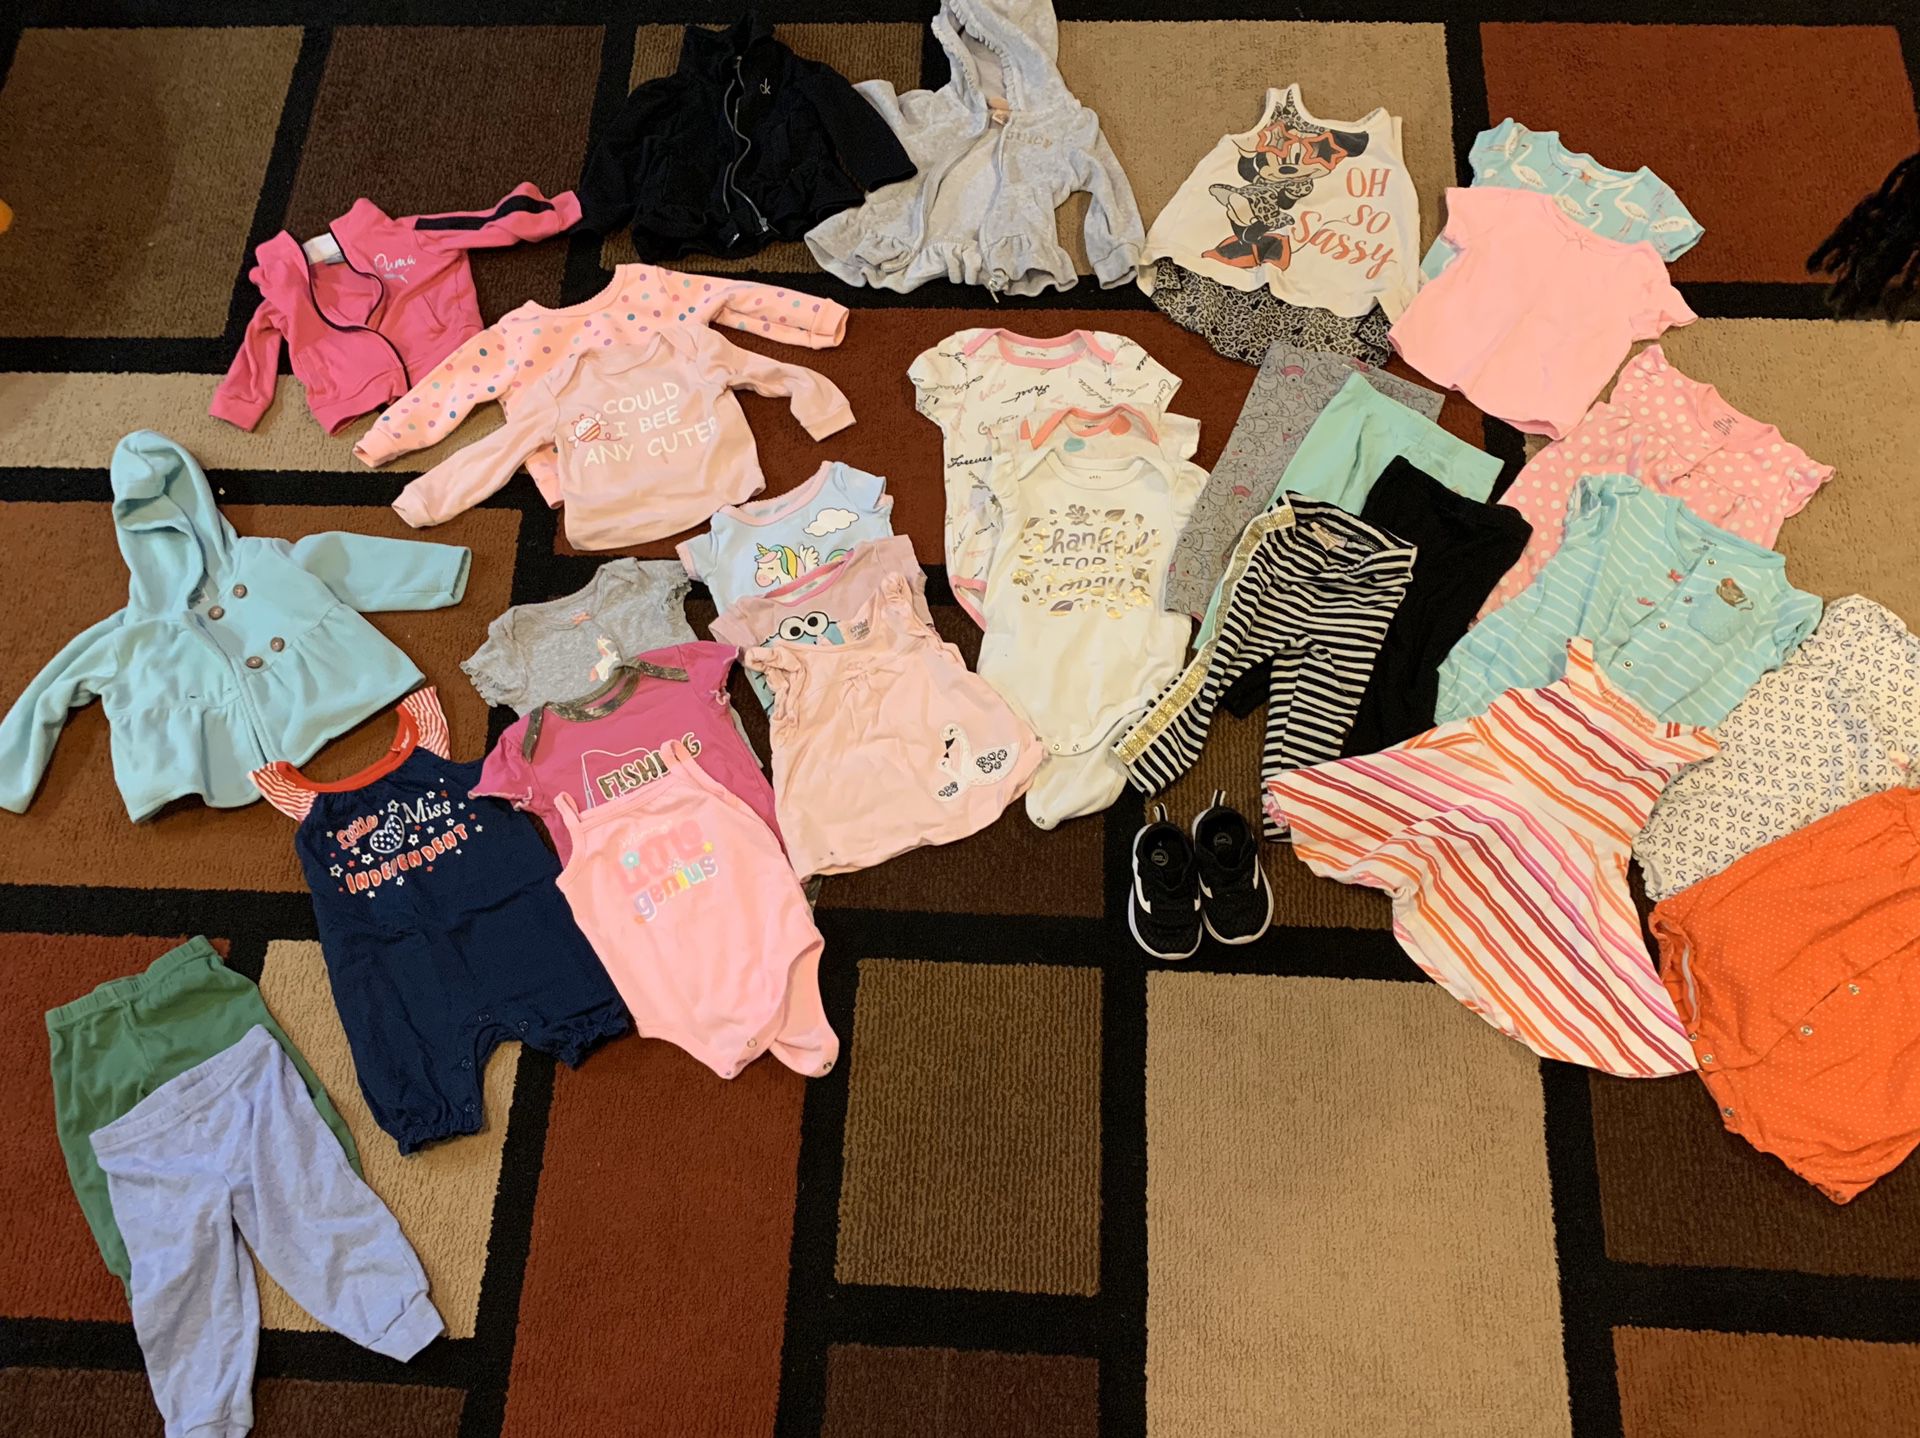 Baby girl clothes (some name brand) 6mo-24mo